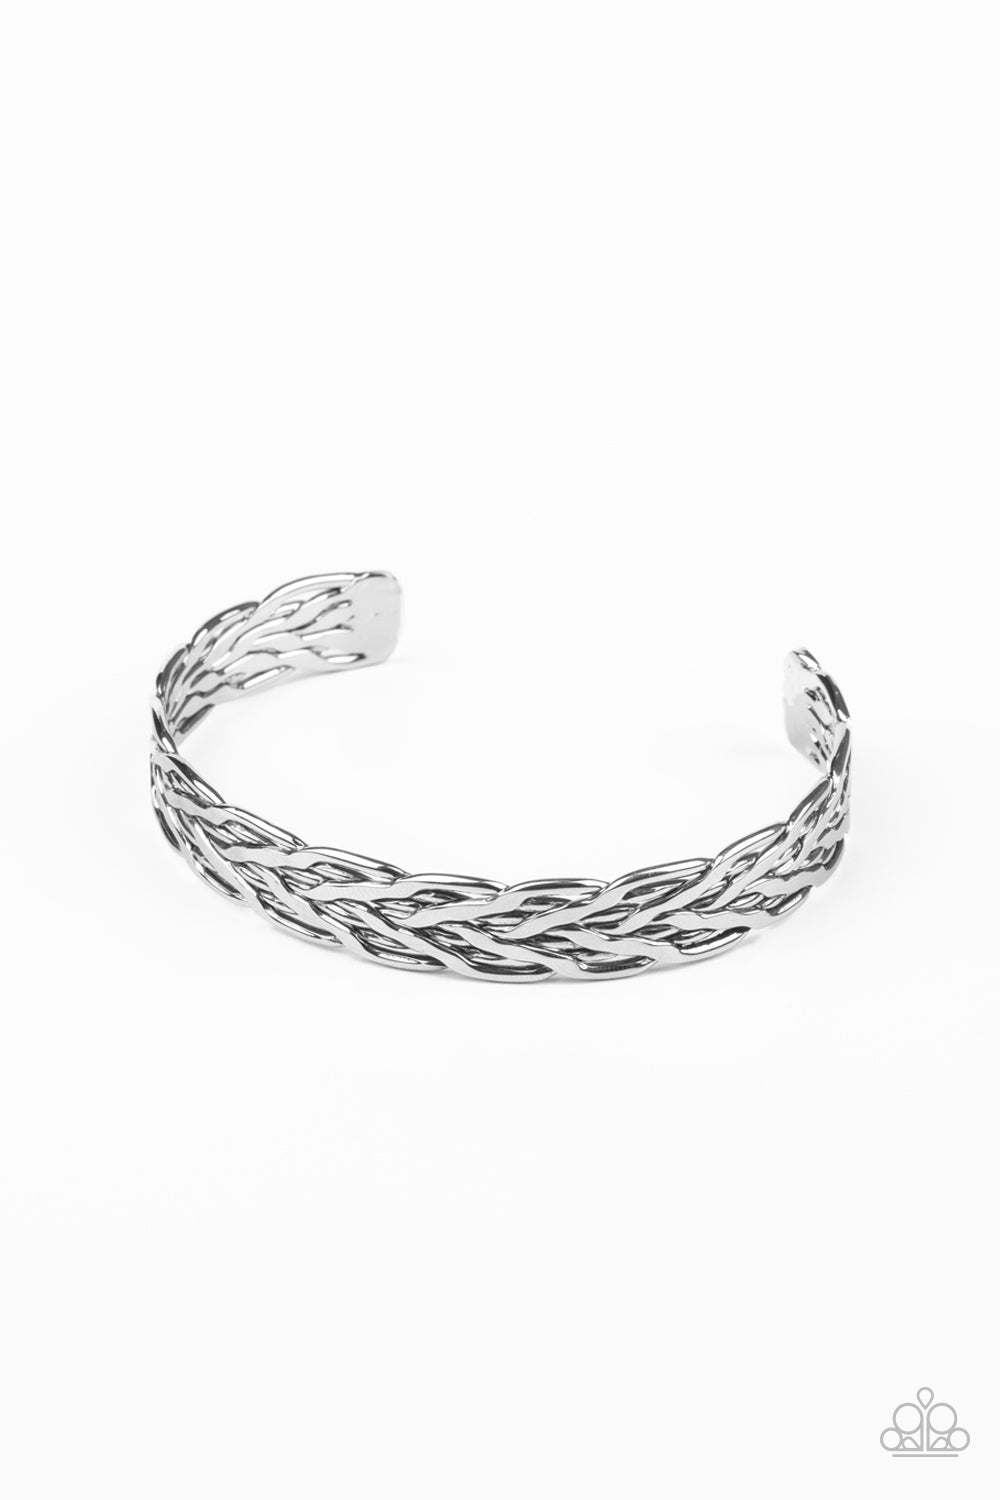 Magnetic Maven - silver - Paparazzi MENS bracelet